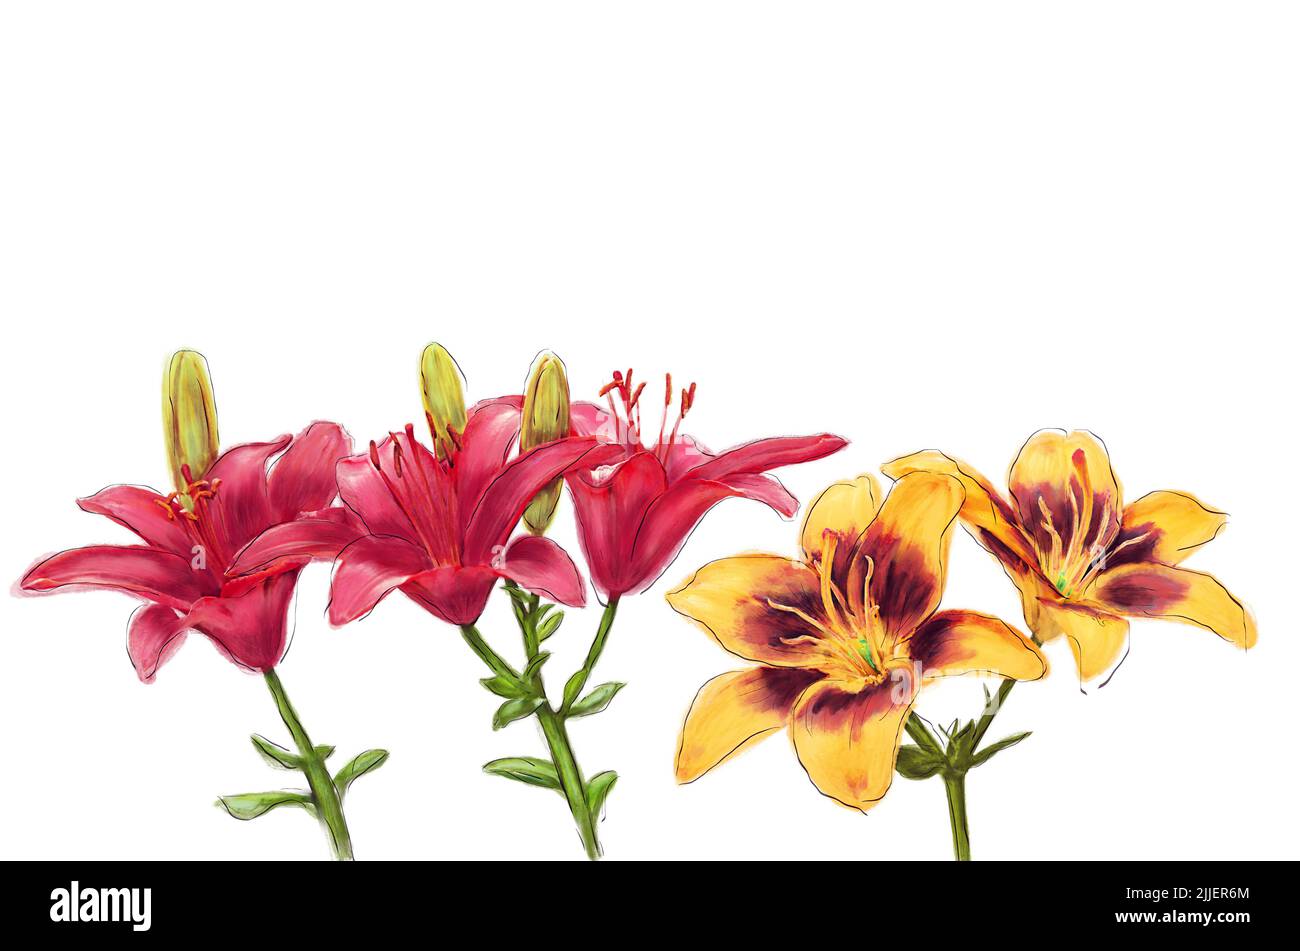 Ilustración de acuarela de flores de lirio aislada sobre fondo blanco Foto de stock